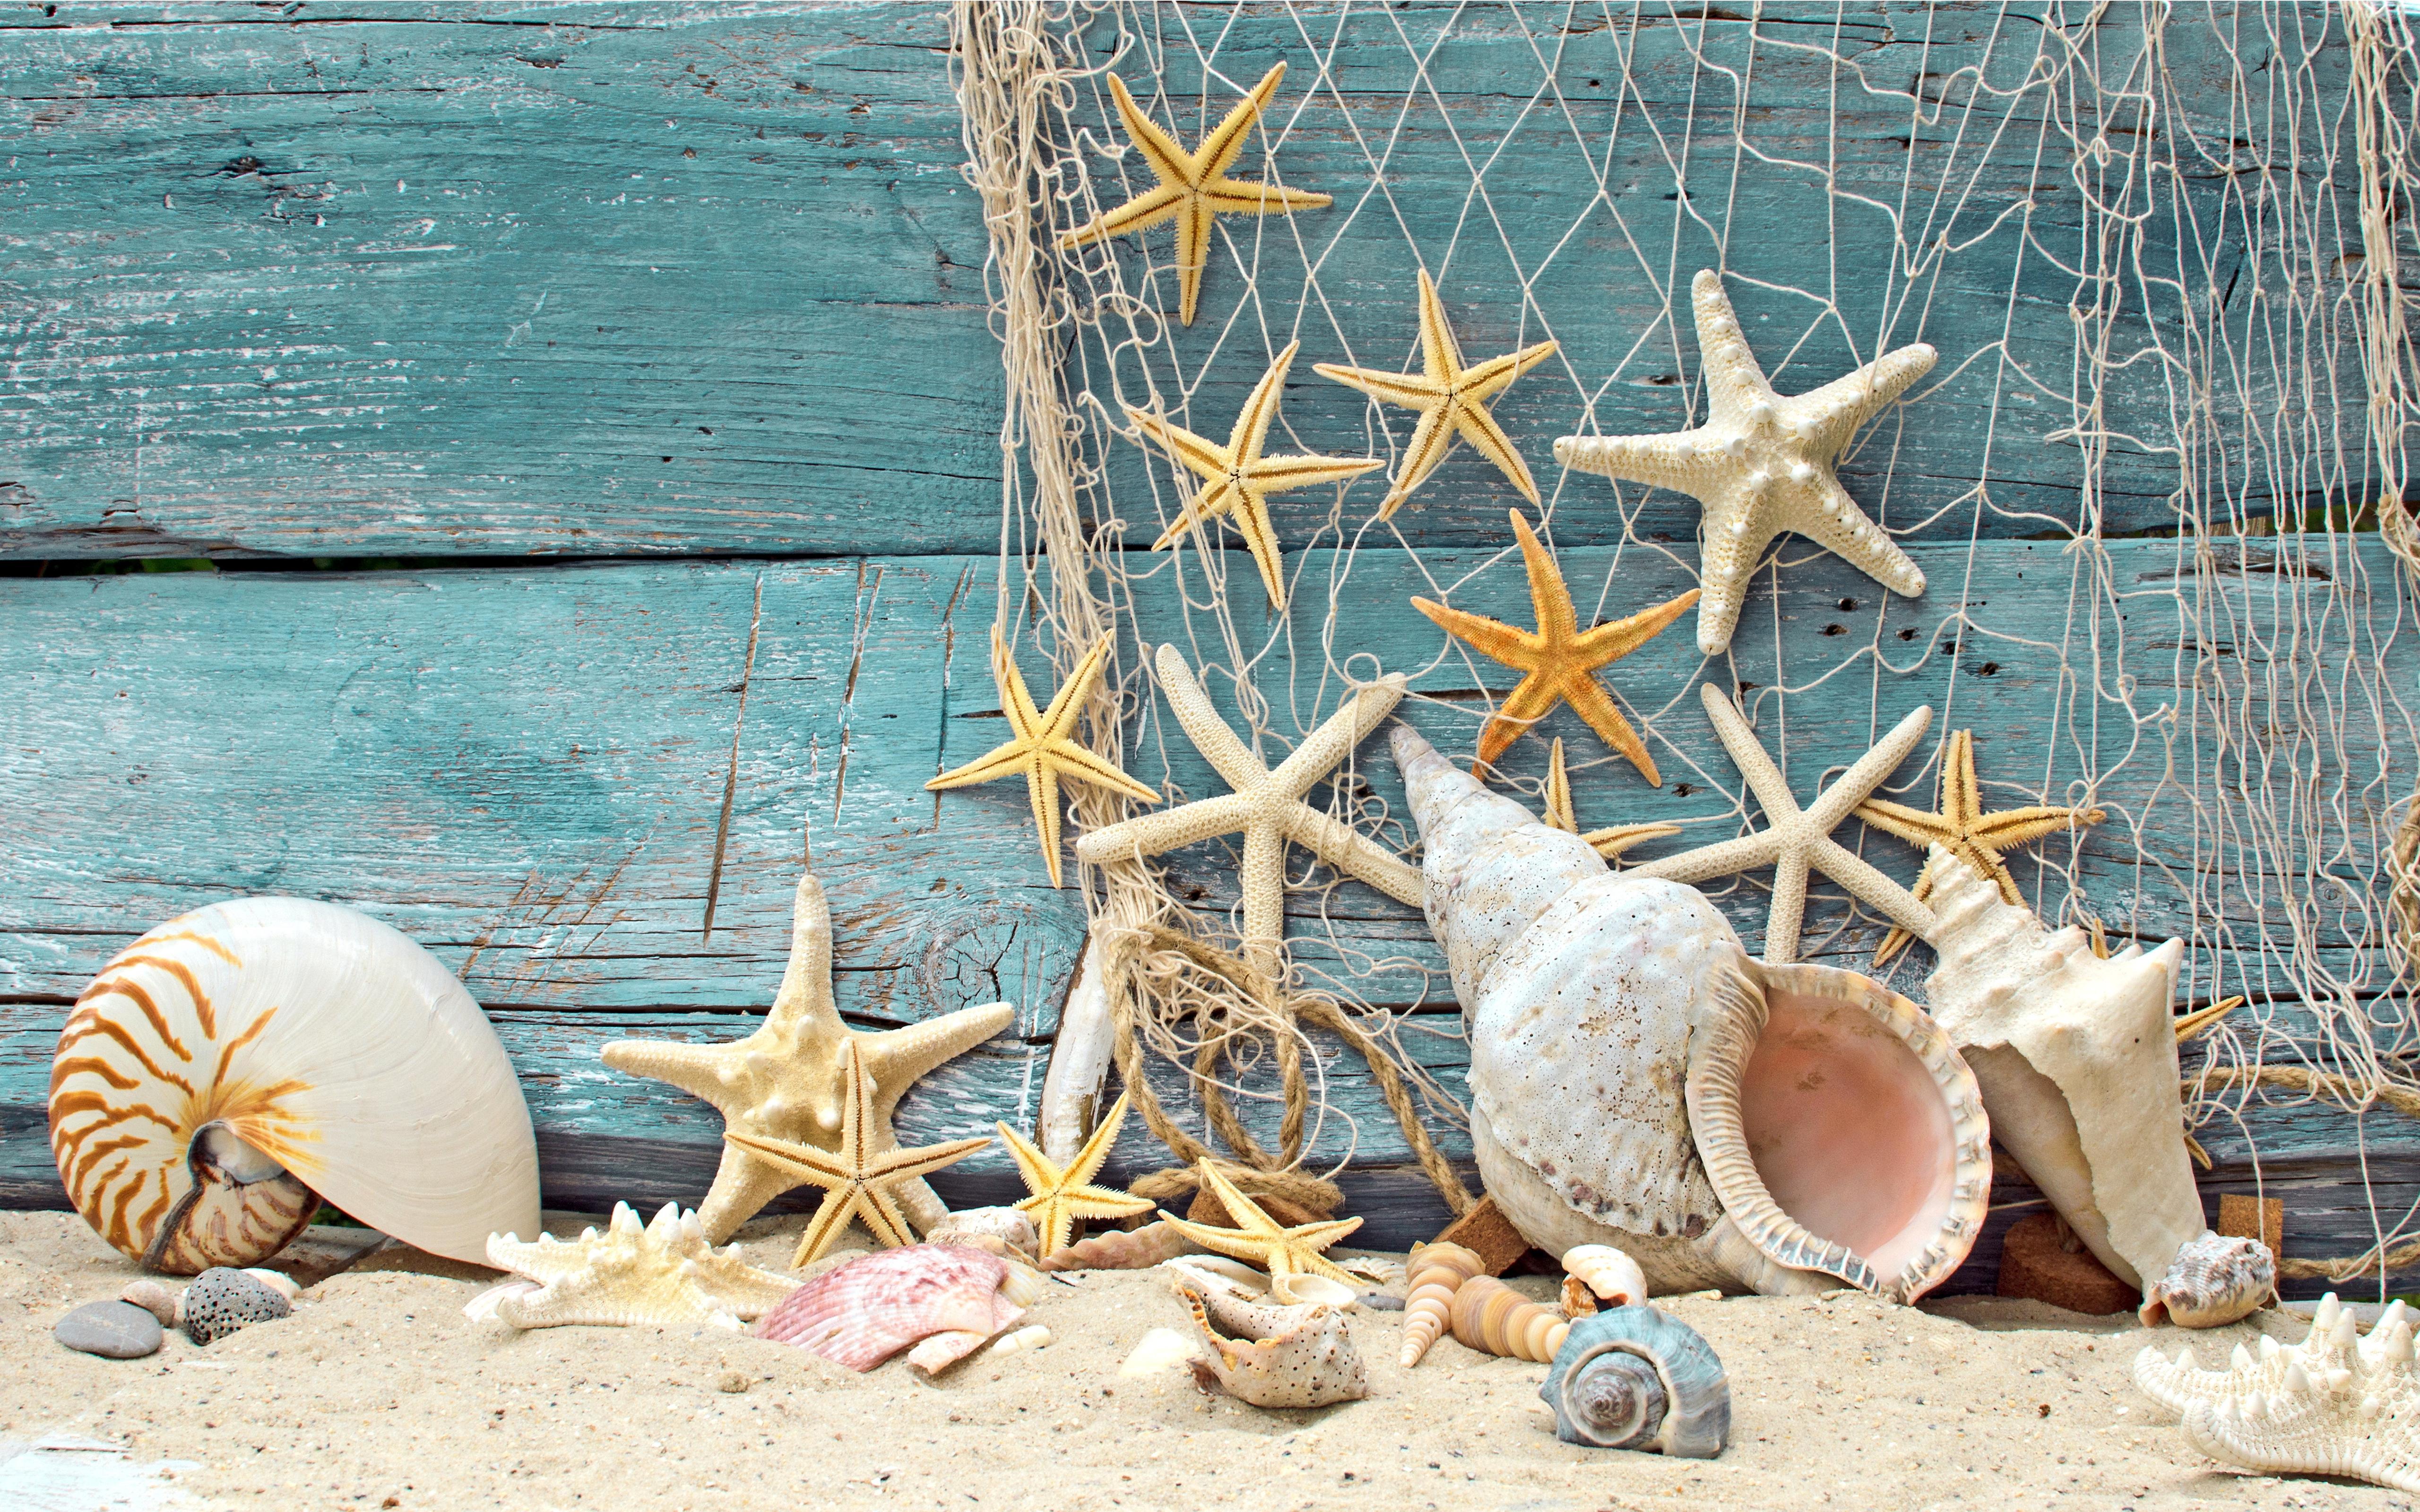 Seashells and starfish on the boat - Summer Holiday at sea